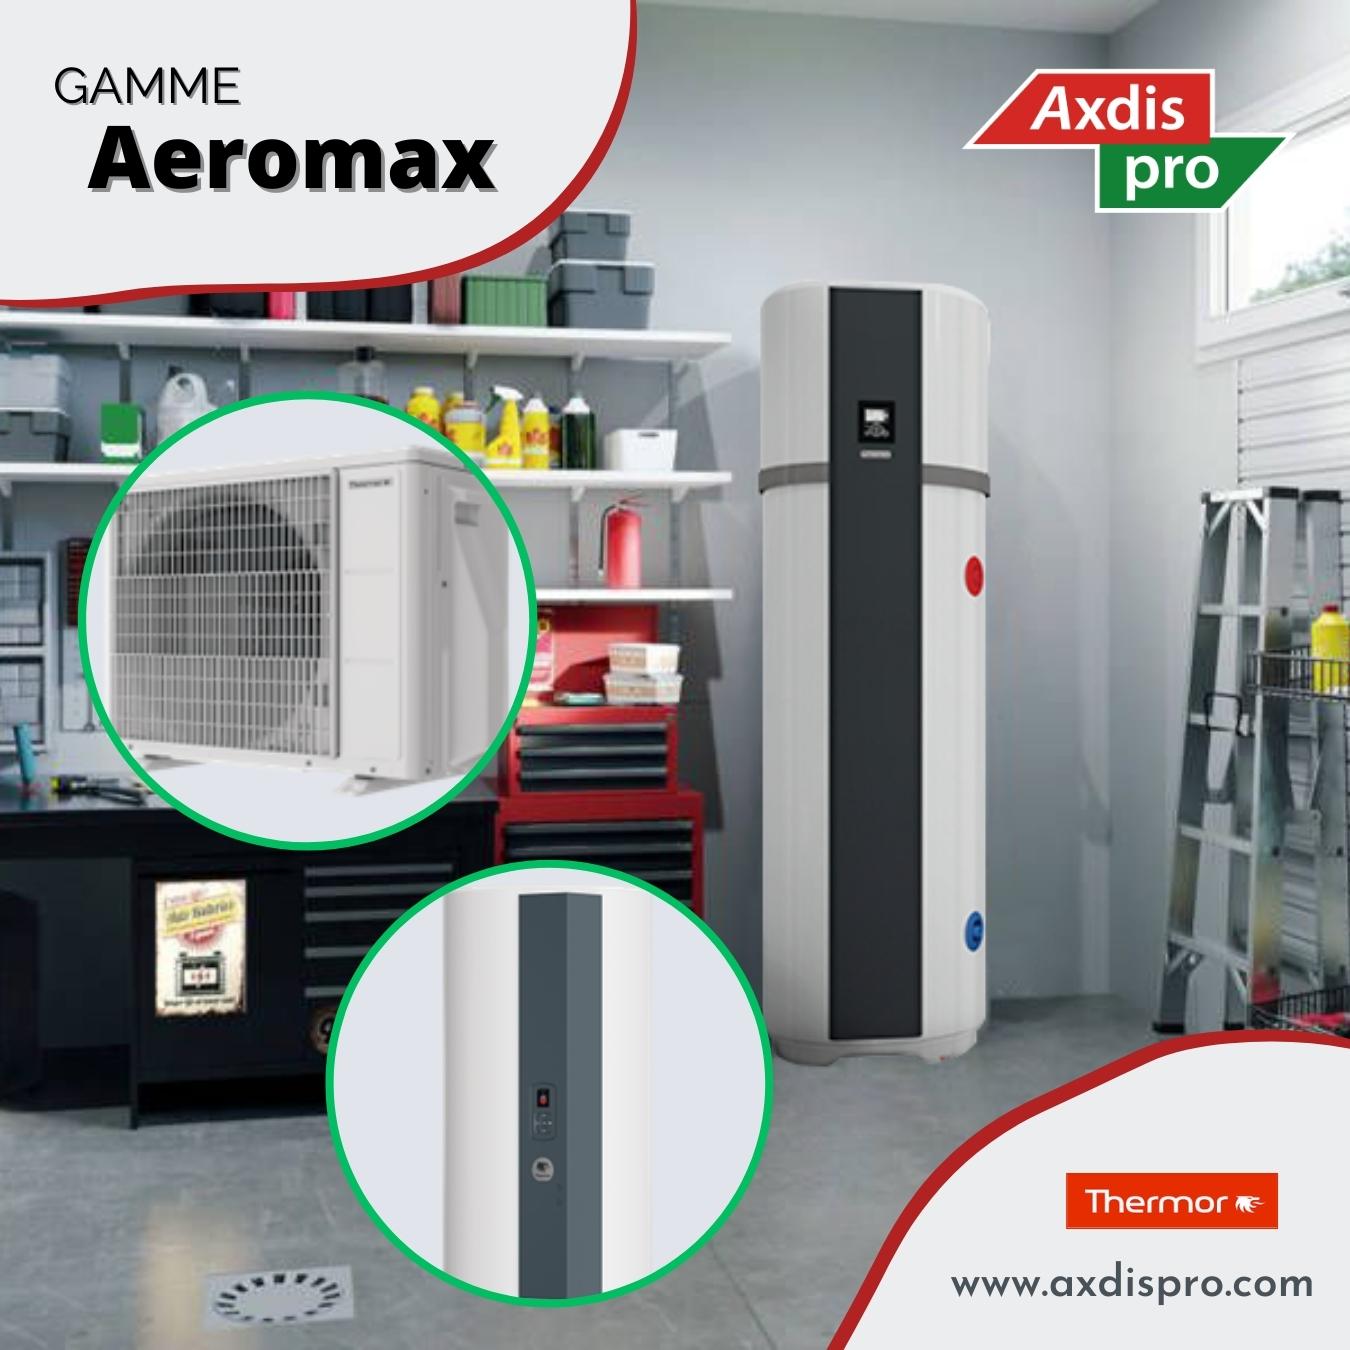 gamme aeromax thermor axdis pro ballo thermodynamique